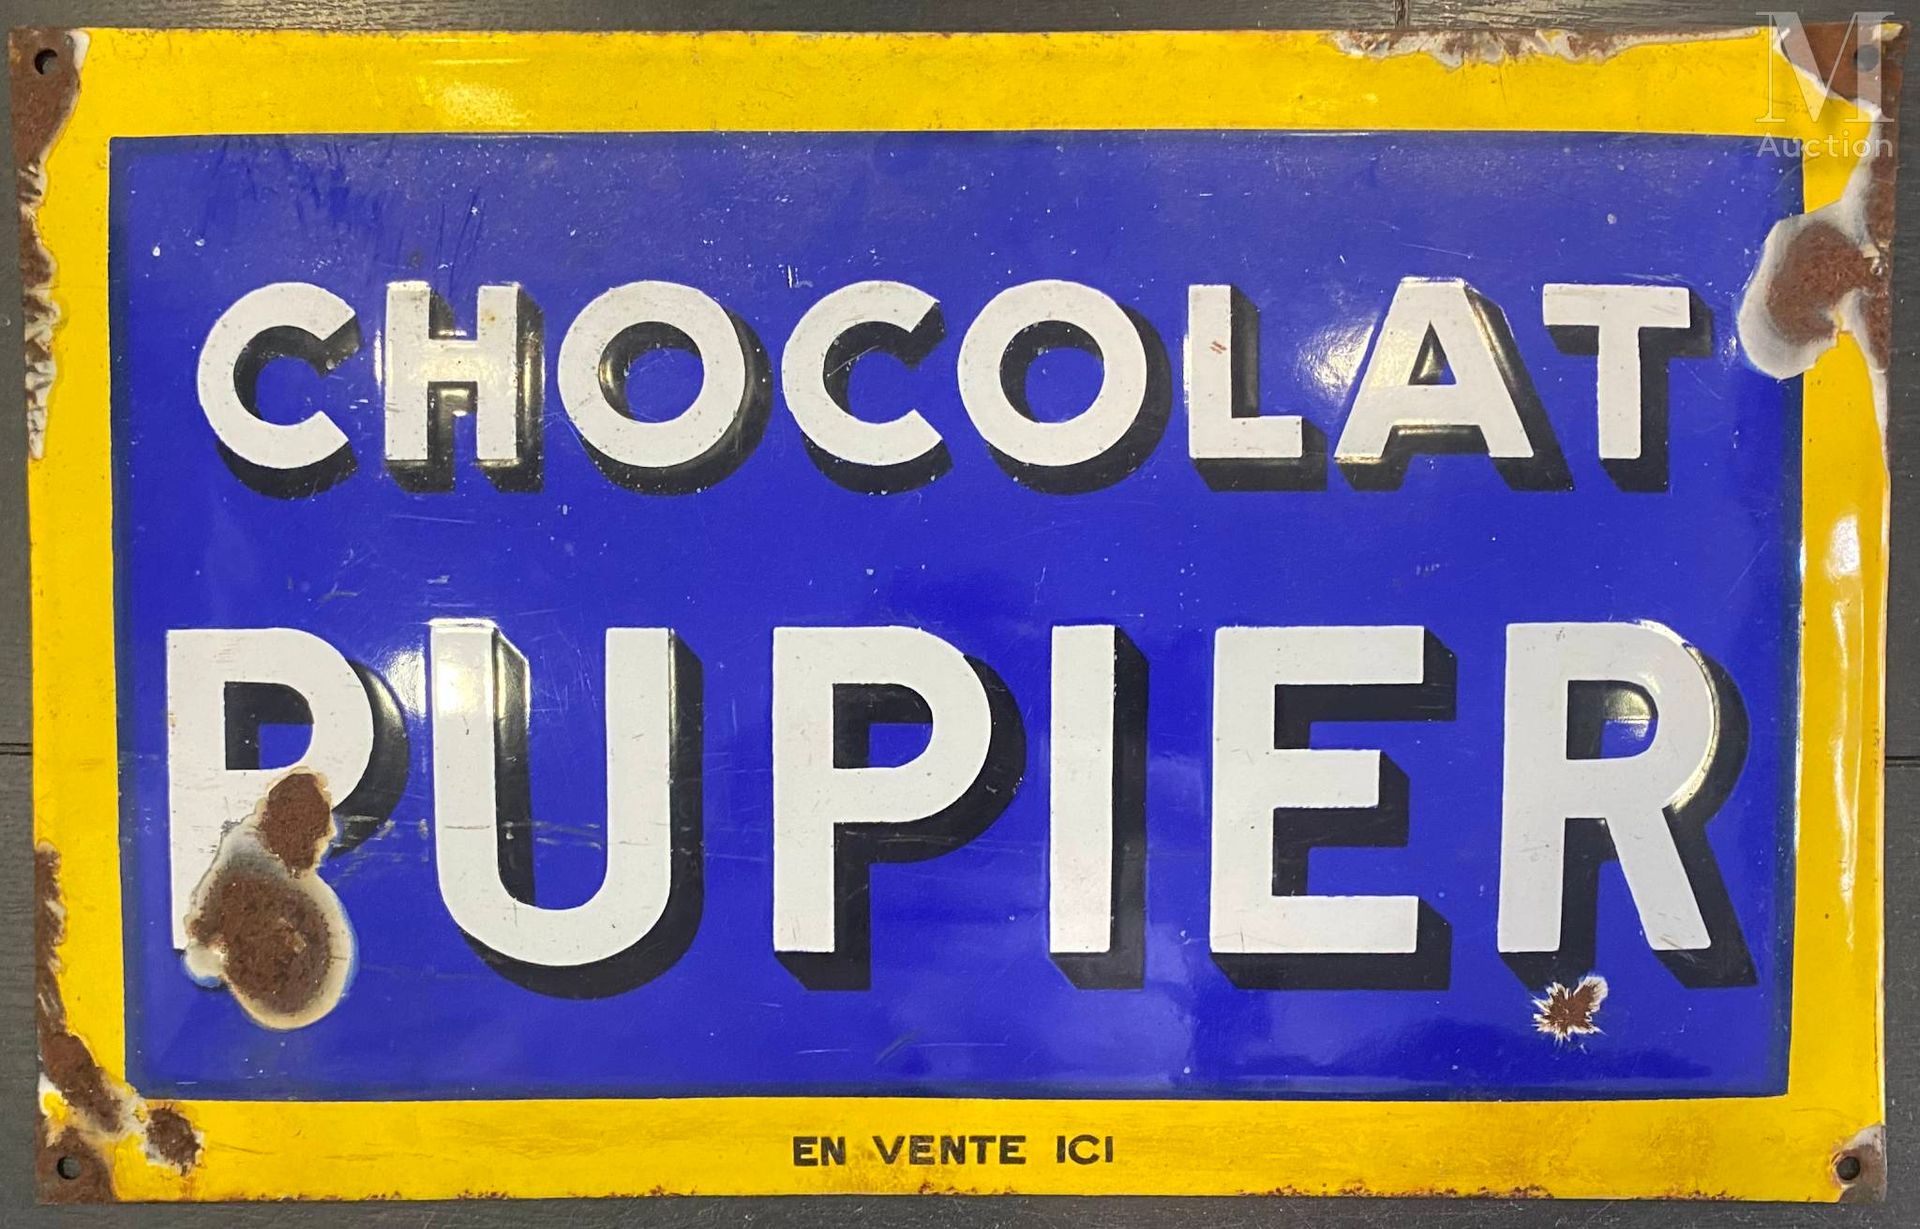 Plaque émaillée 普皮尔巧克力

珐琅彩盘
27 x 43.5厘米
(生锈和丢失的部分)